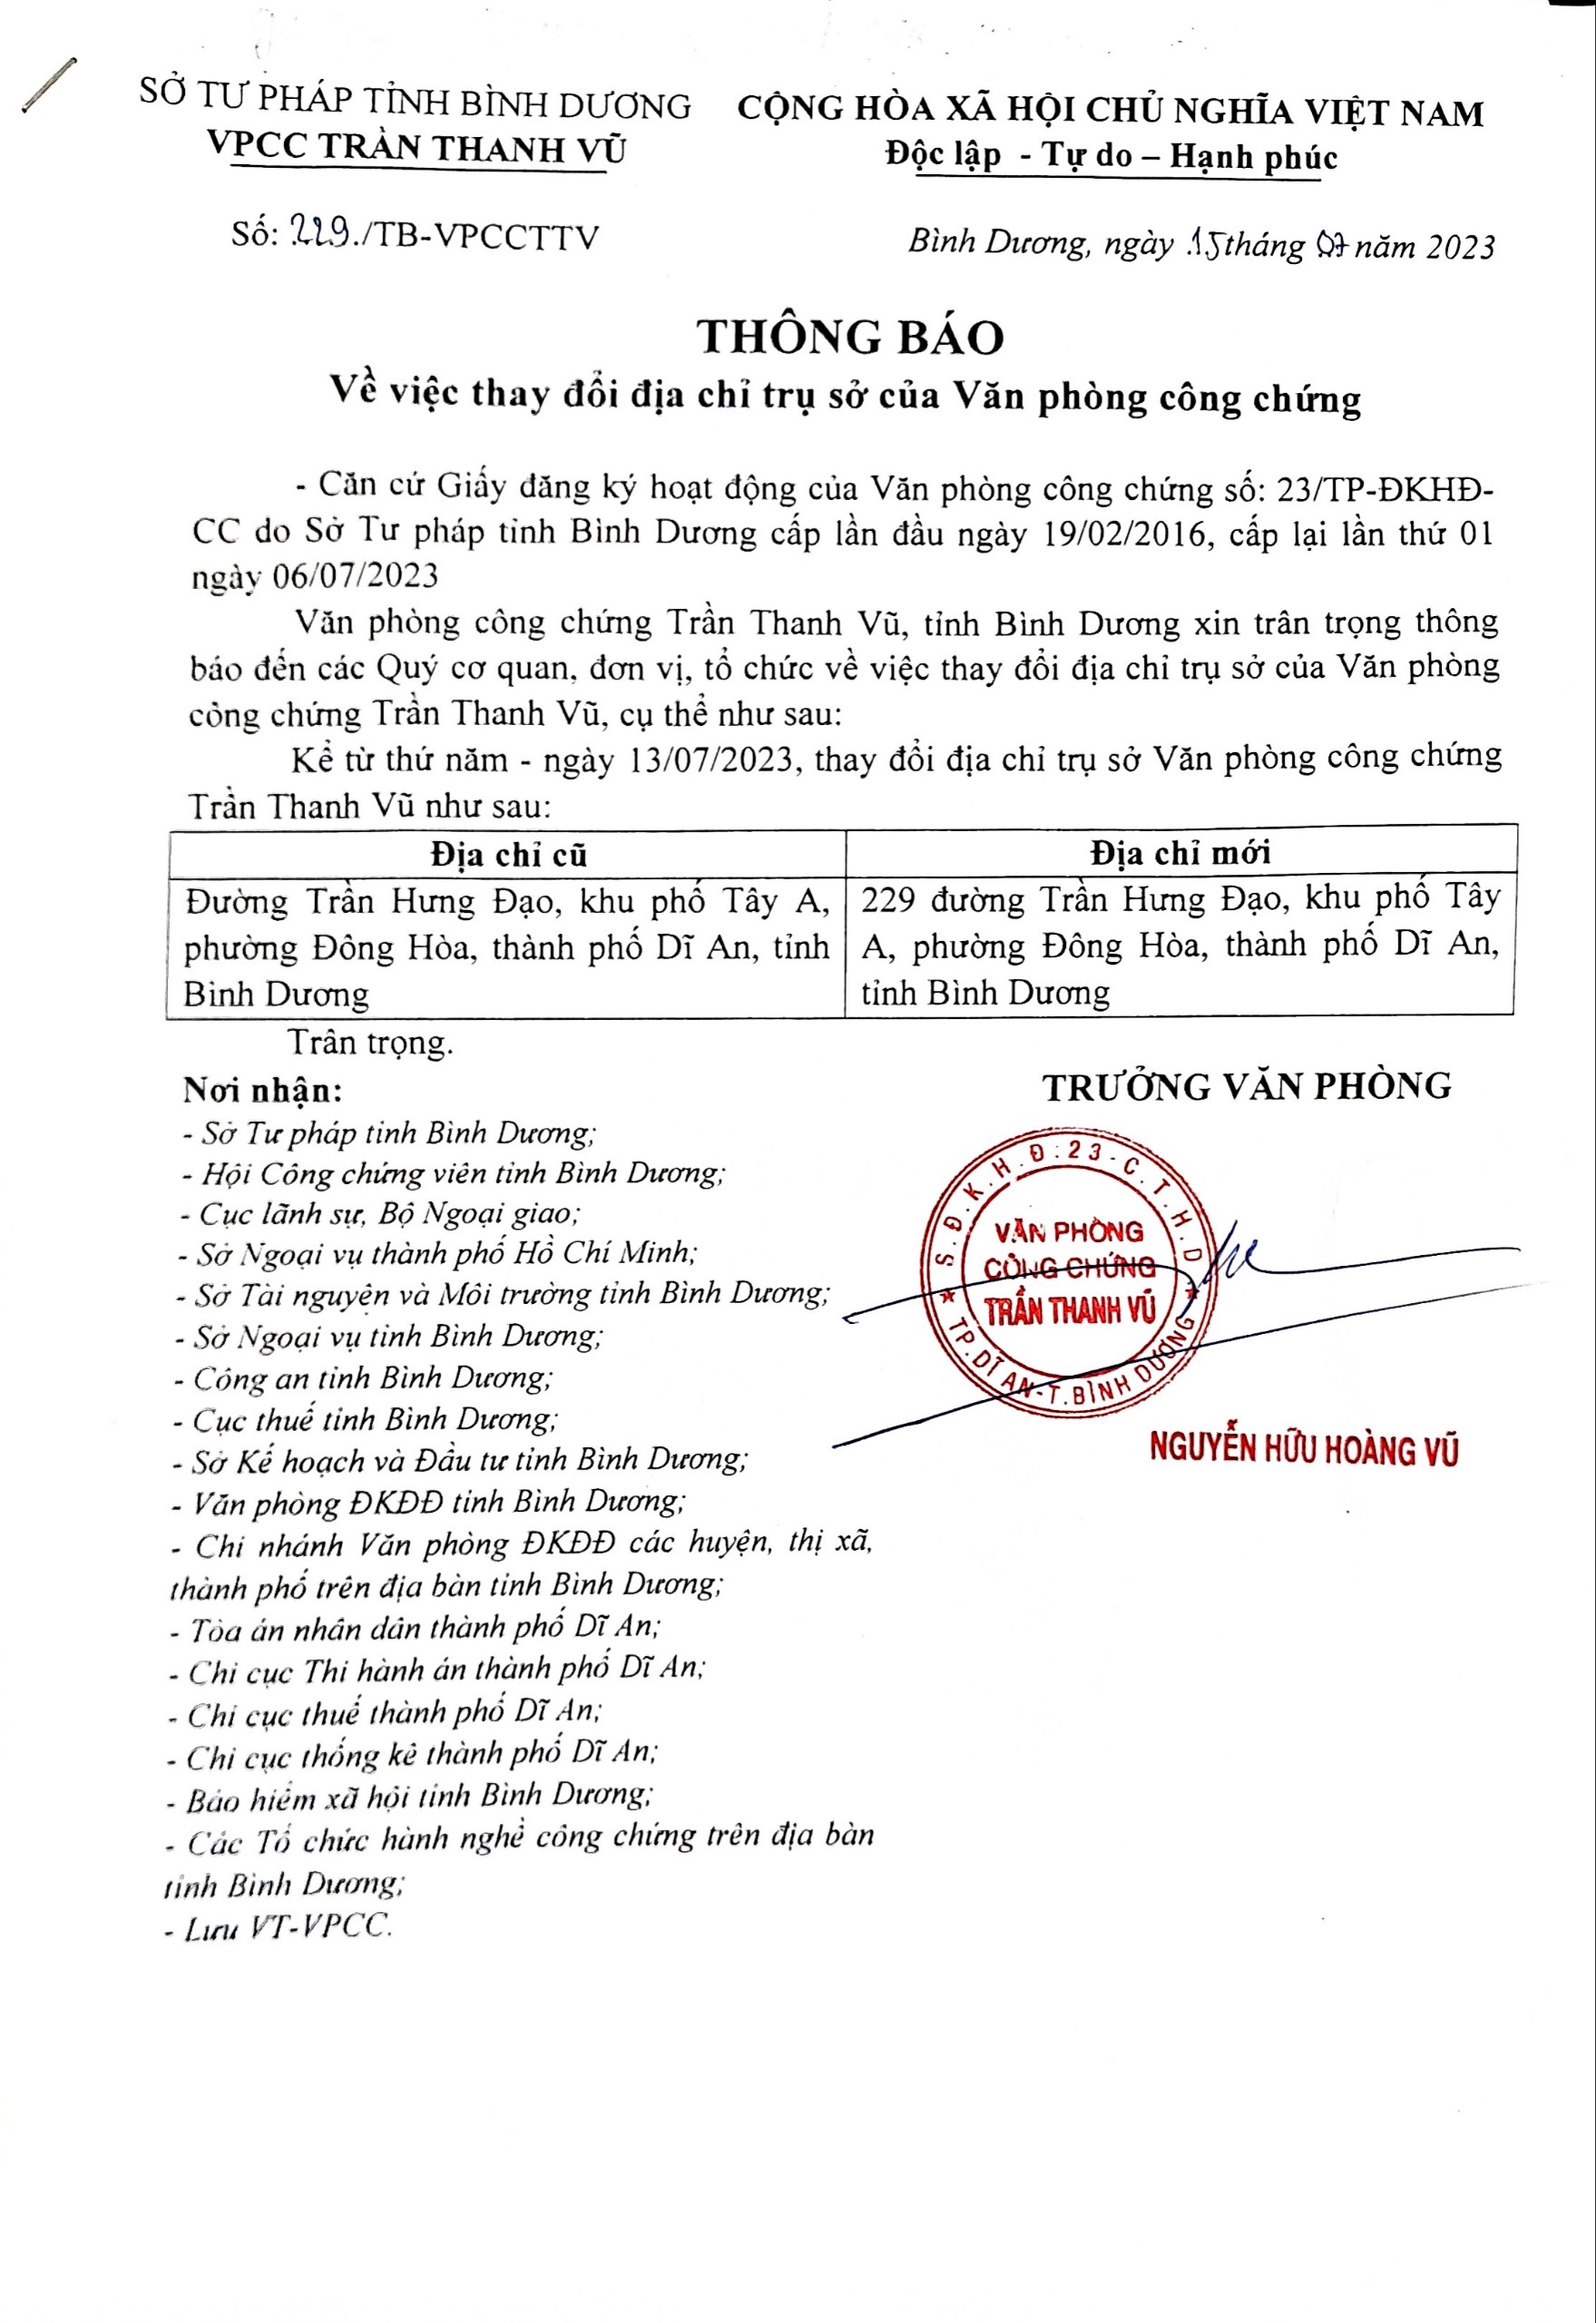 Thông báo thay đổi địa chỉ trụ sở VPCC Trần Thanh Vũ